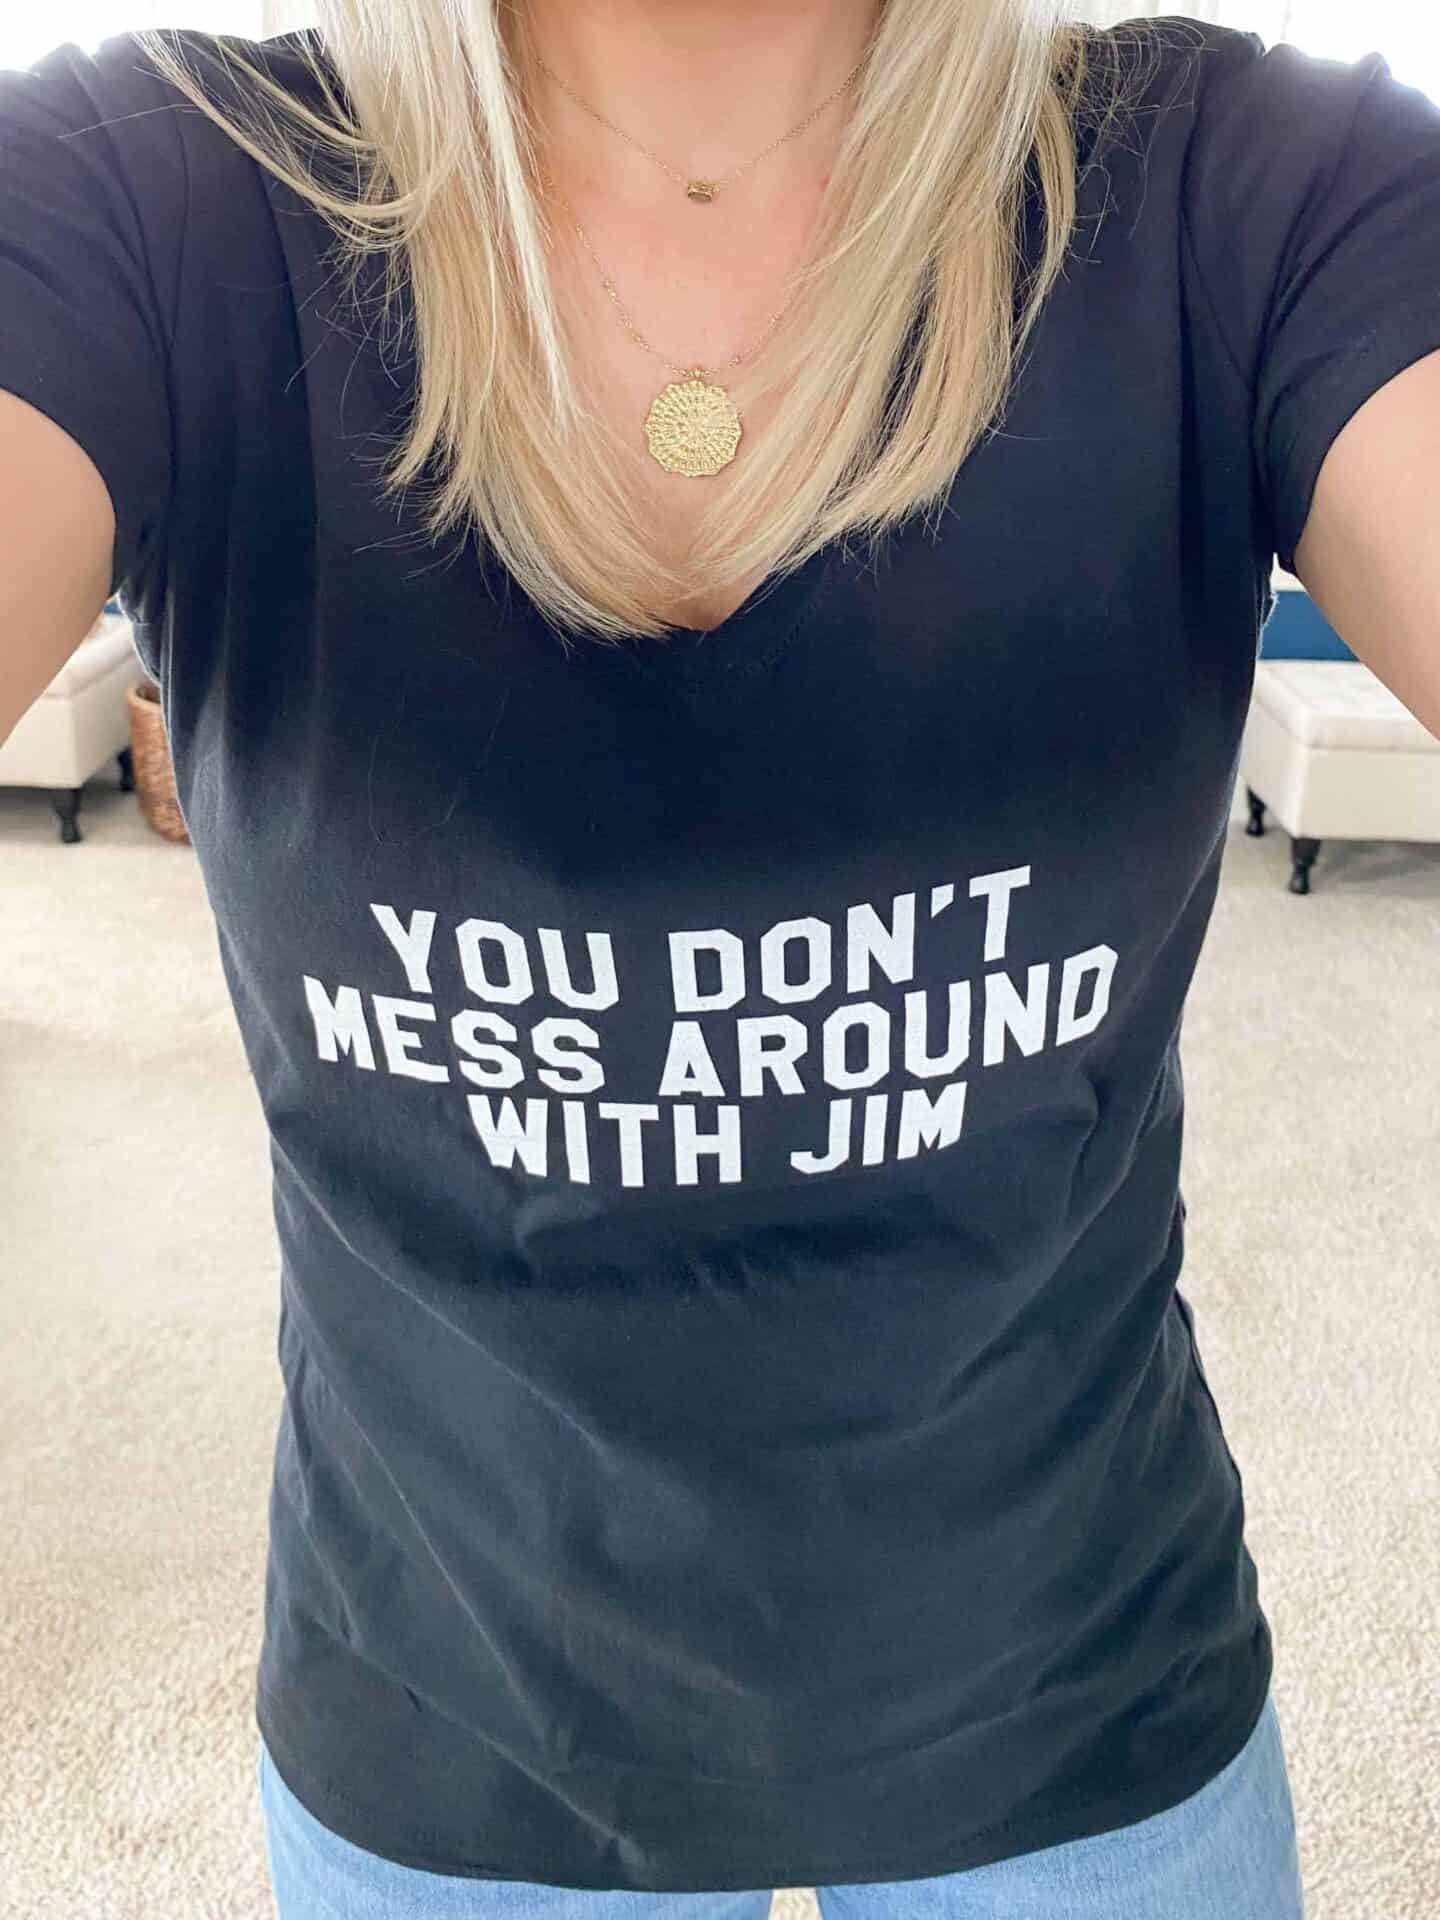 jim-croce-t-shirt-amazon